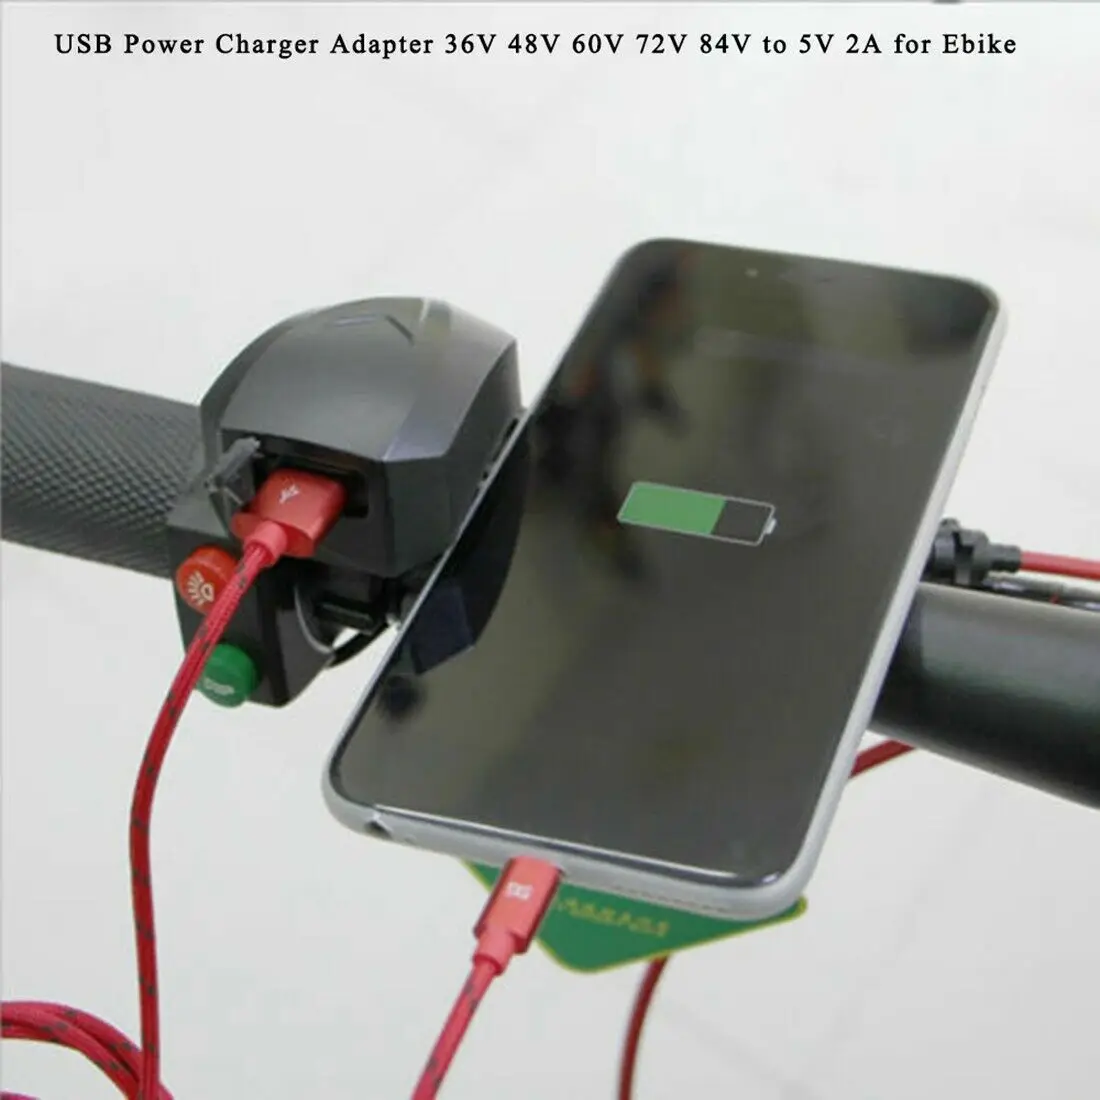 Handlebar USB Power Charger Adapter 36V 48V 60V 72V 84V to 5V 2A for Ebike for 22-25mm Straight Handlebars SP2392